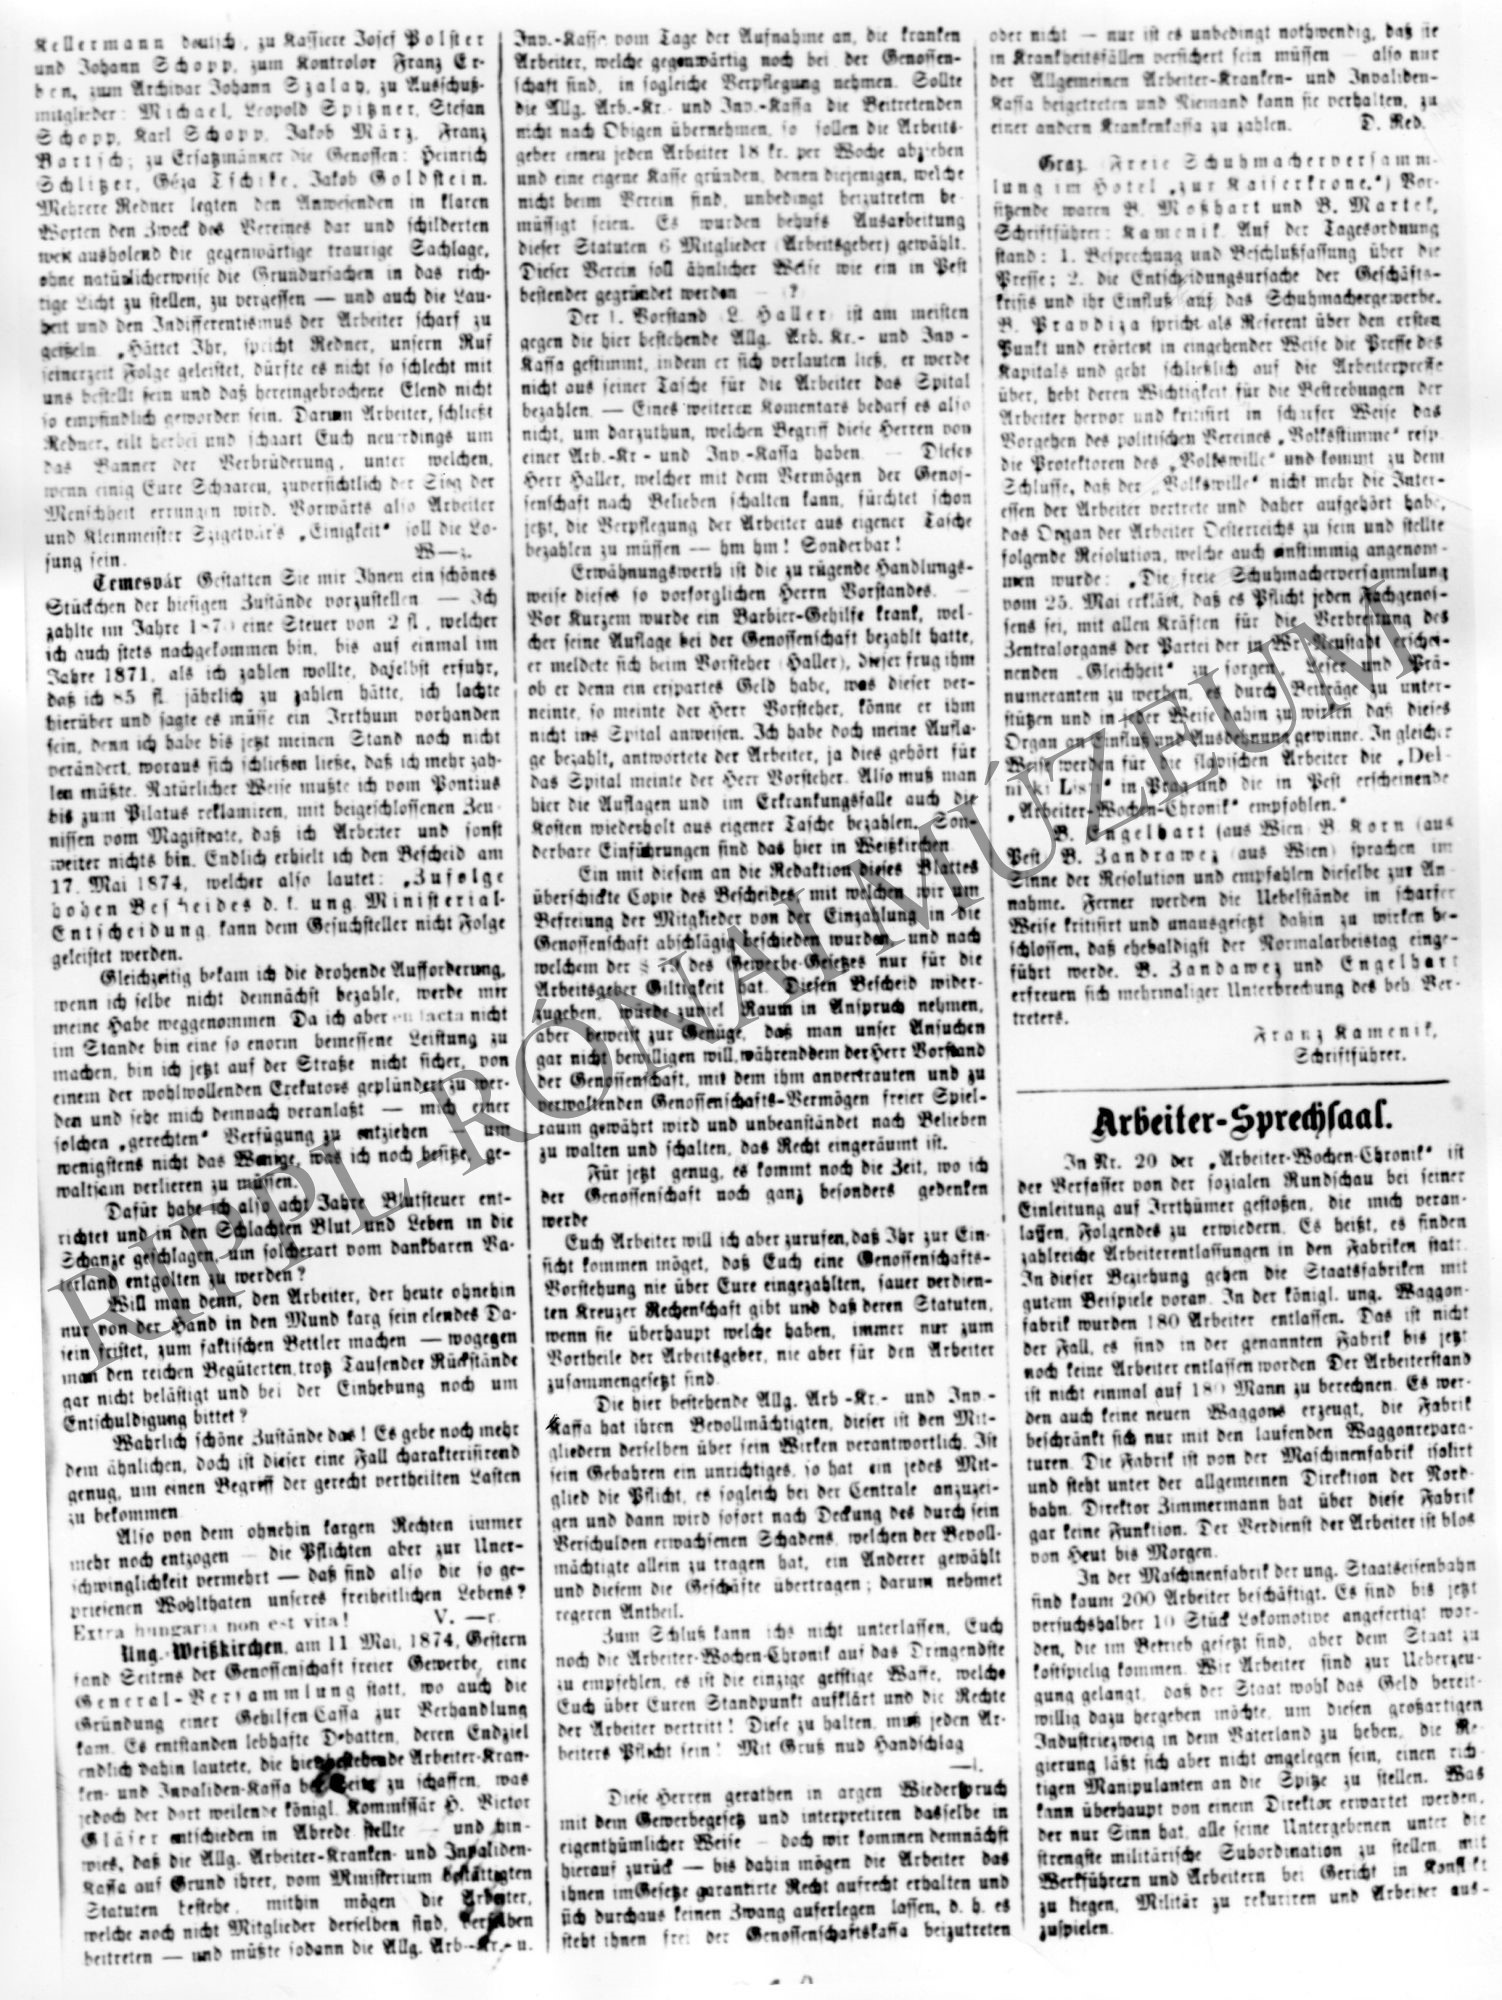 Arbeiter Wochen Chronic 1874. május 31. cikke - A szigetvári Munkás Művelődési Egylet kiáltványa - 2. rész (Rippl-Rónai Múzeum CC BY-NC-SA)